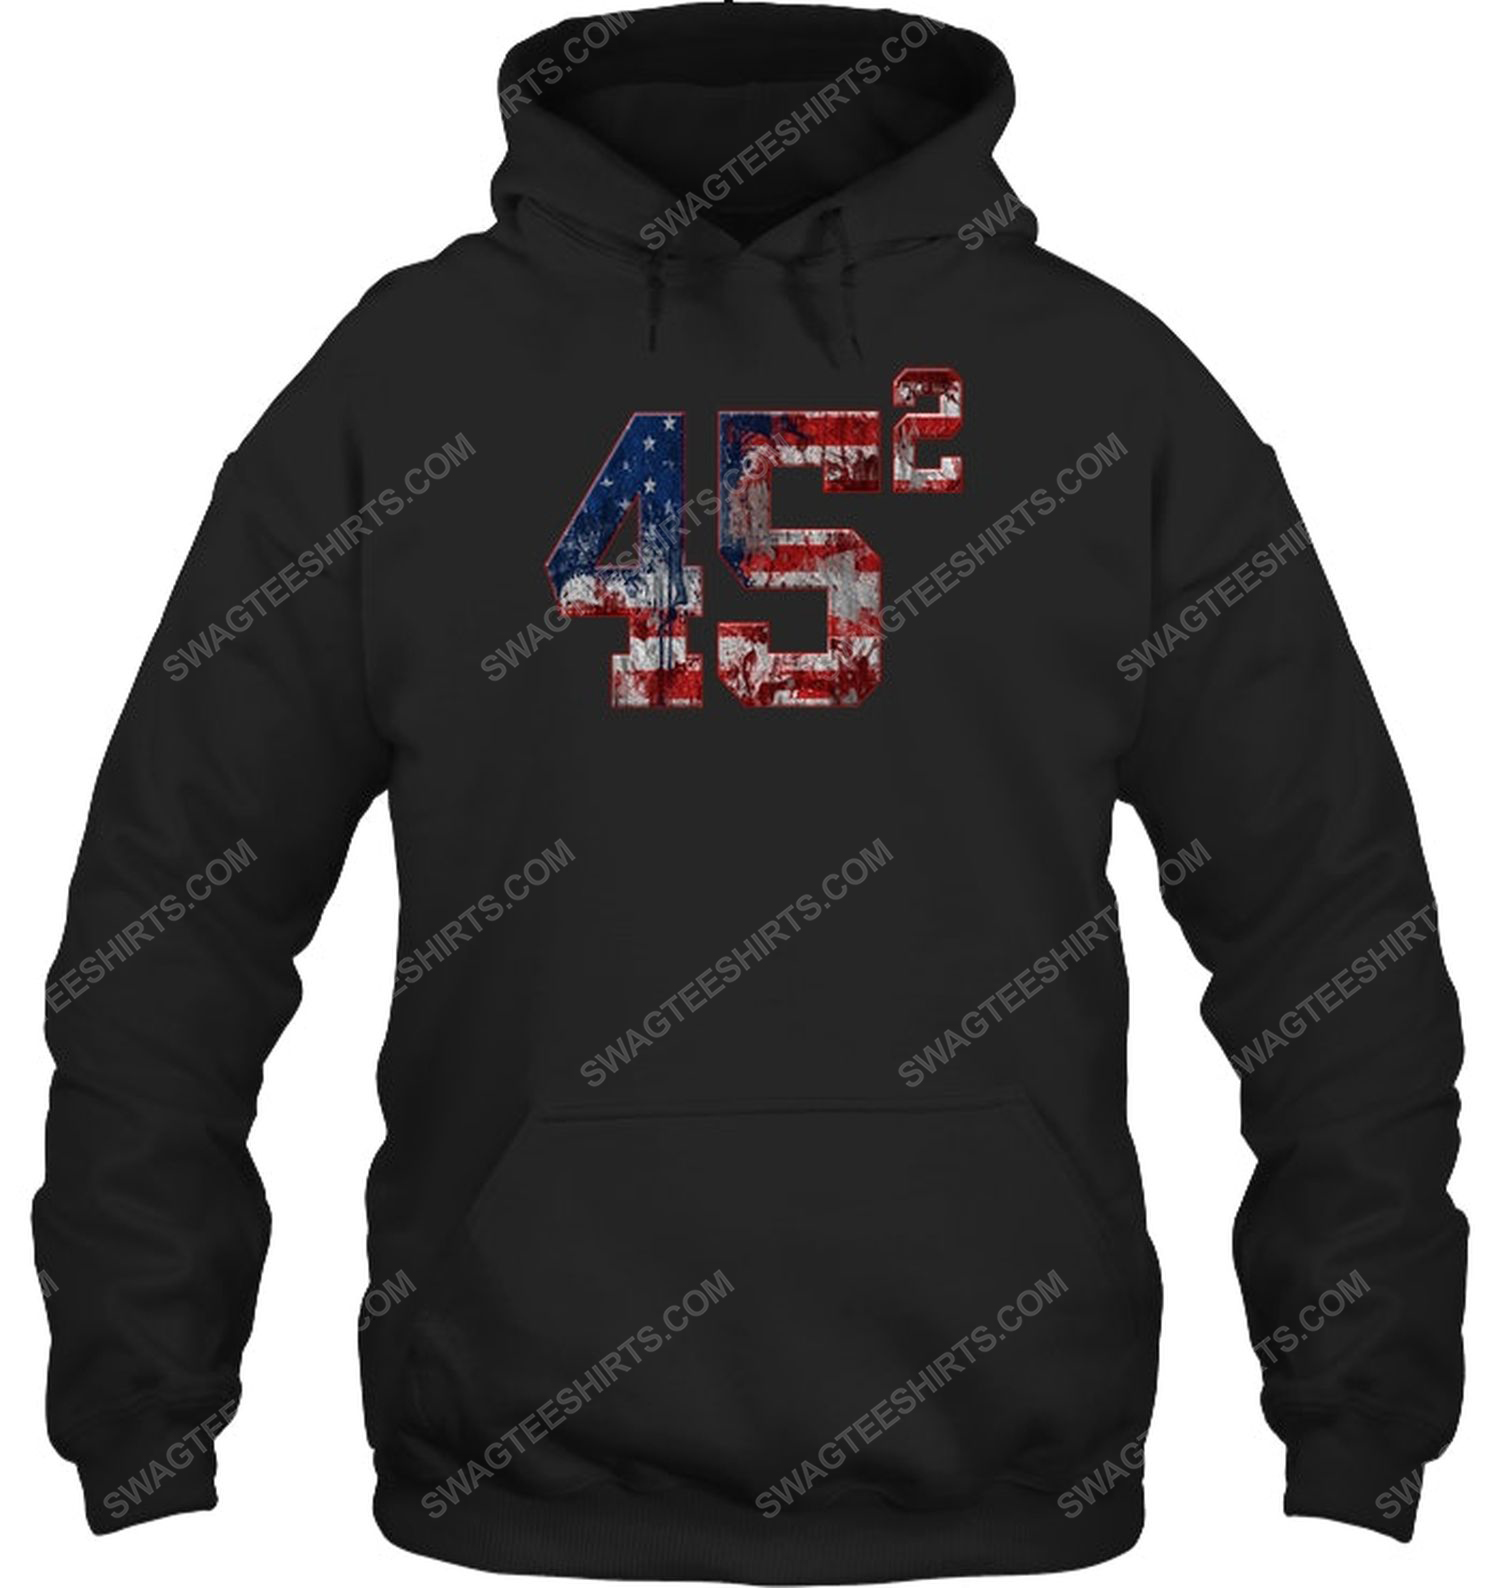 Trump 45 usa flag political hoodie